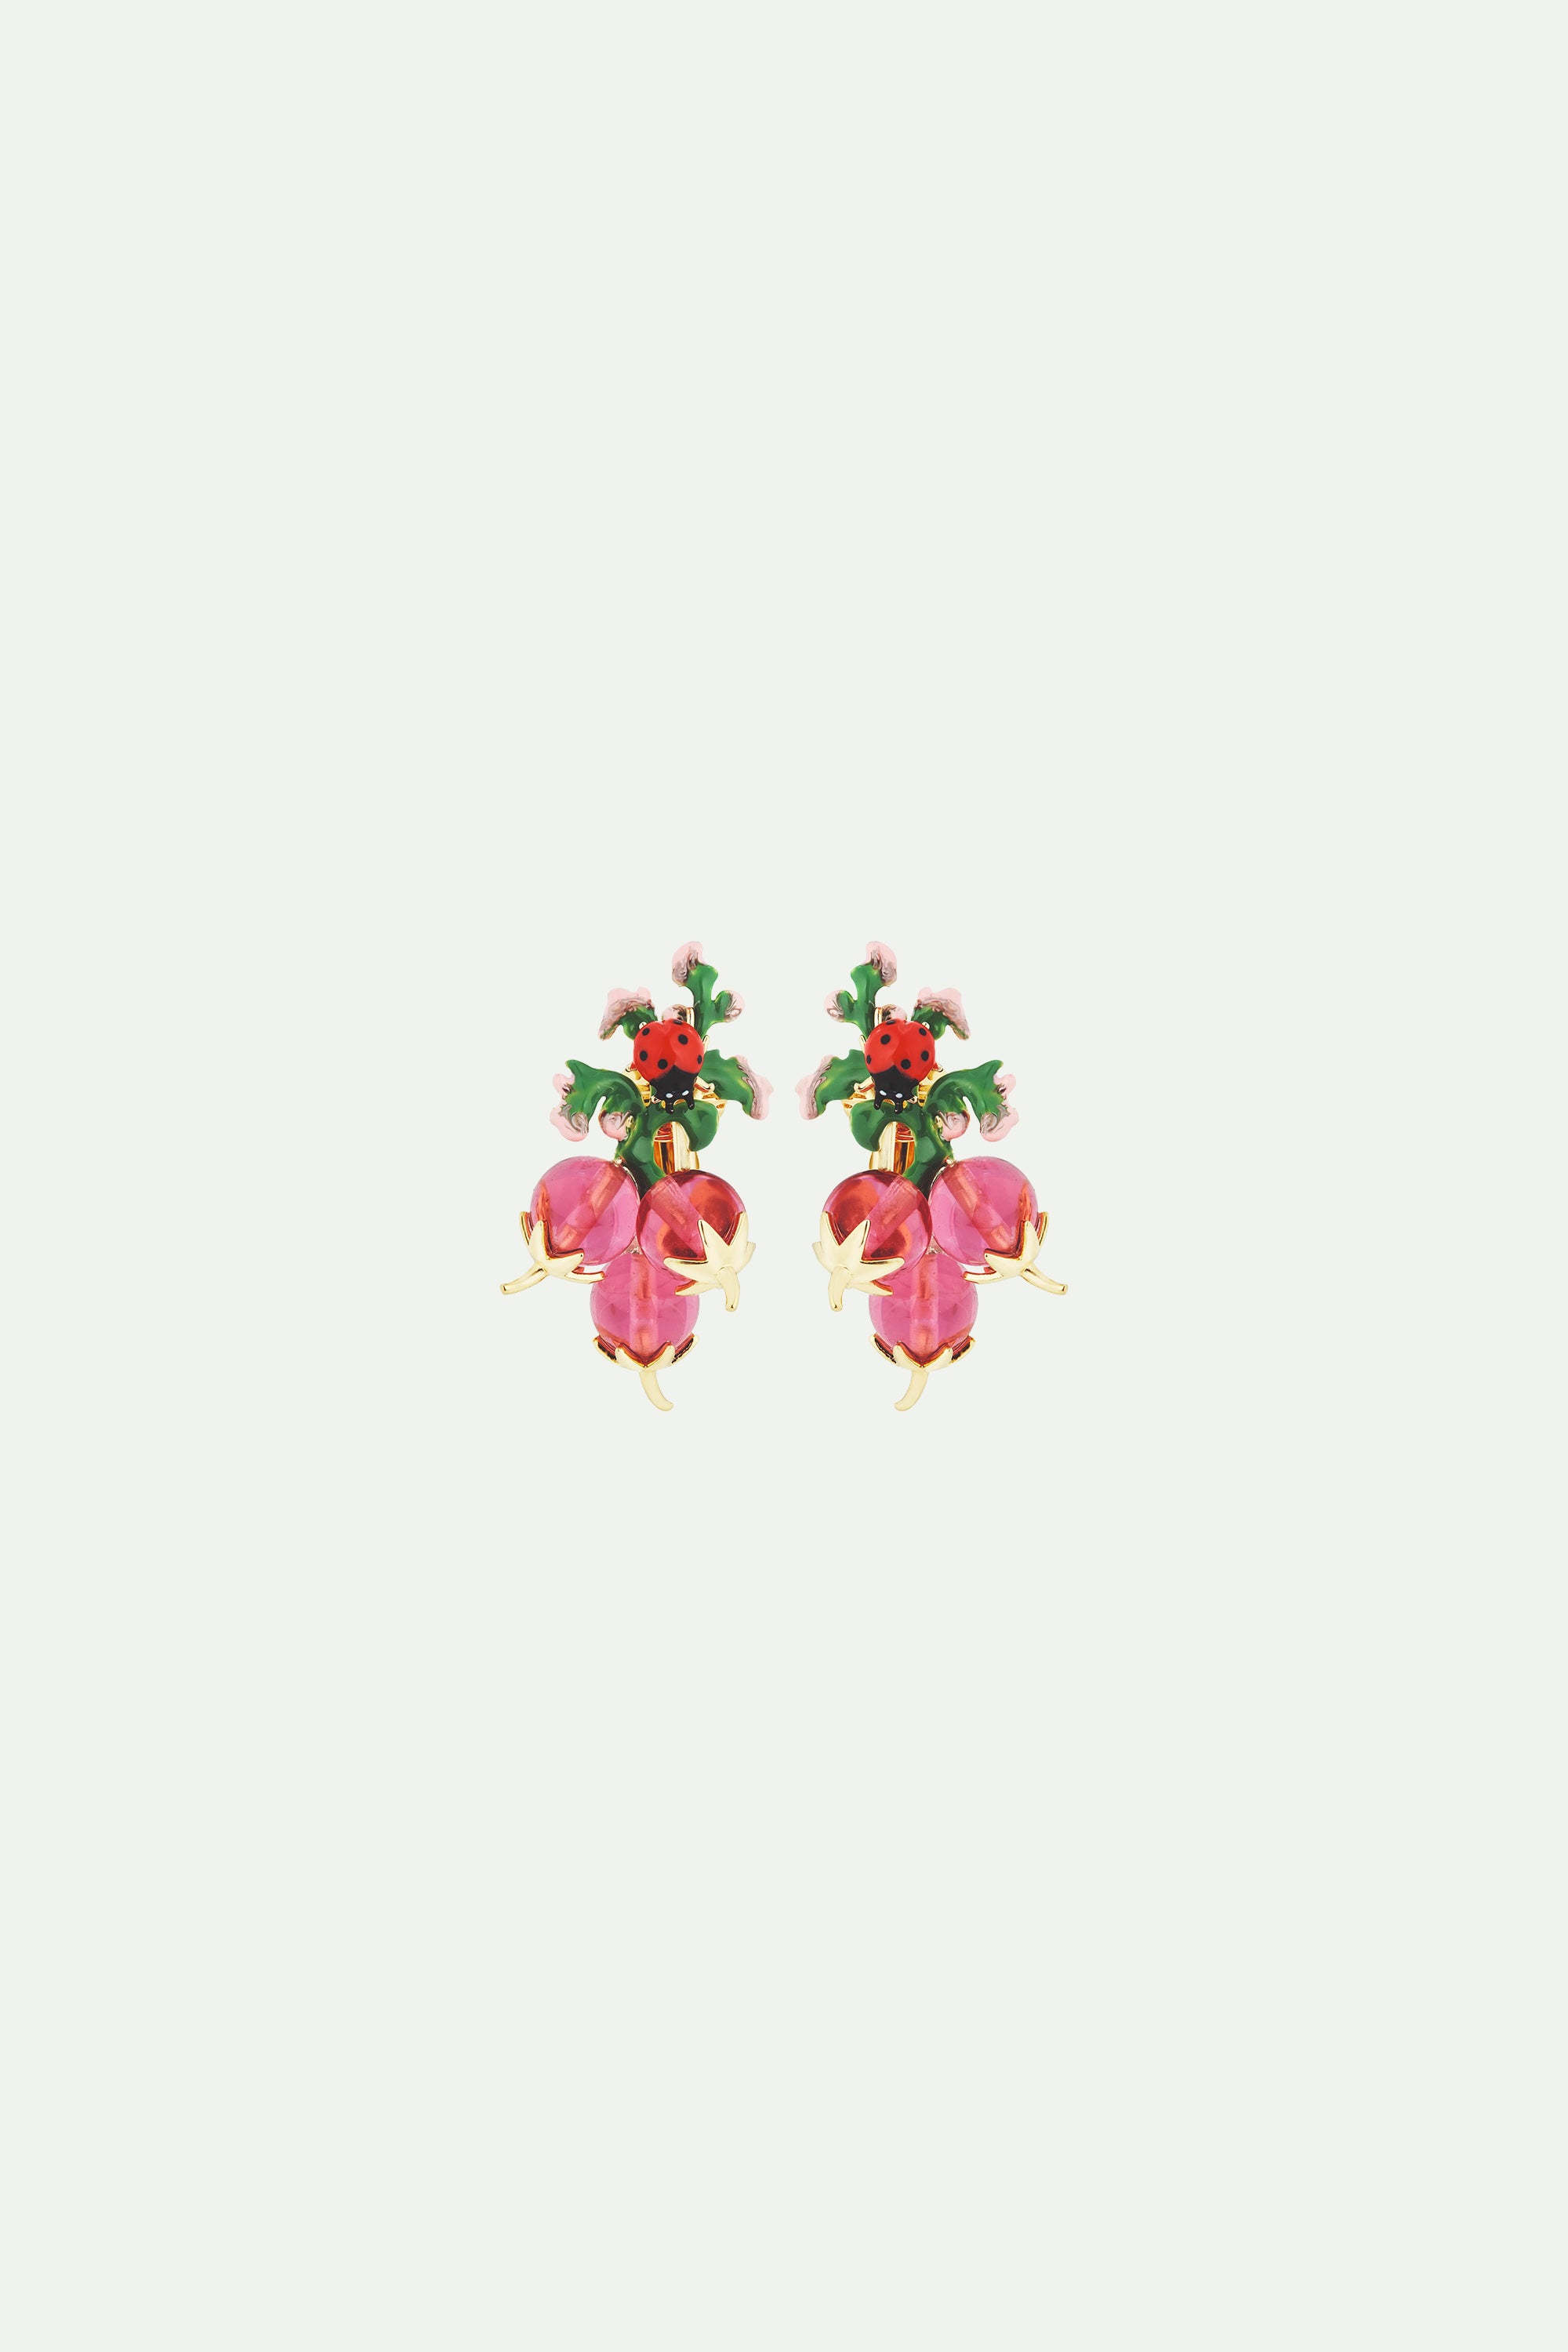 Radish and ladybird post earrings